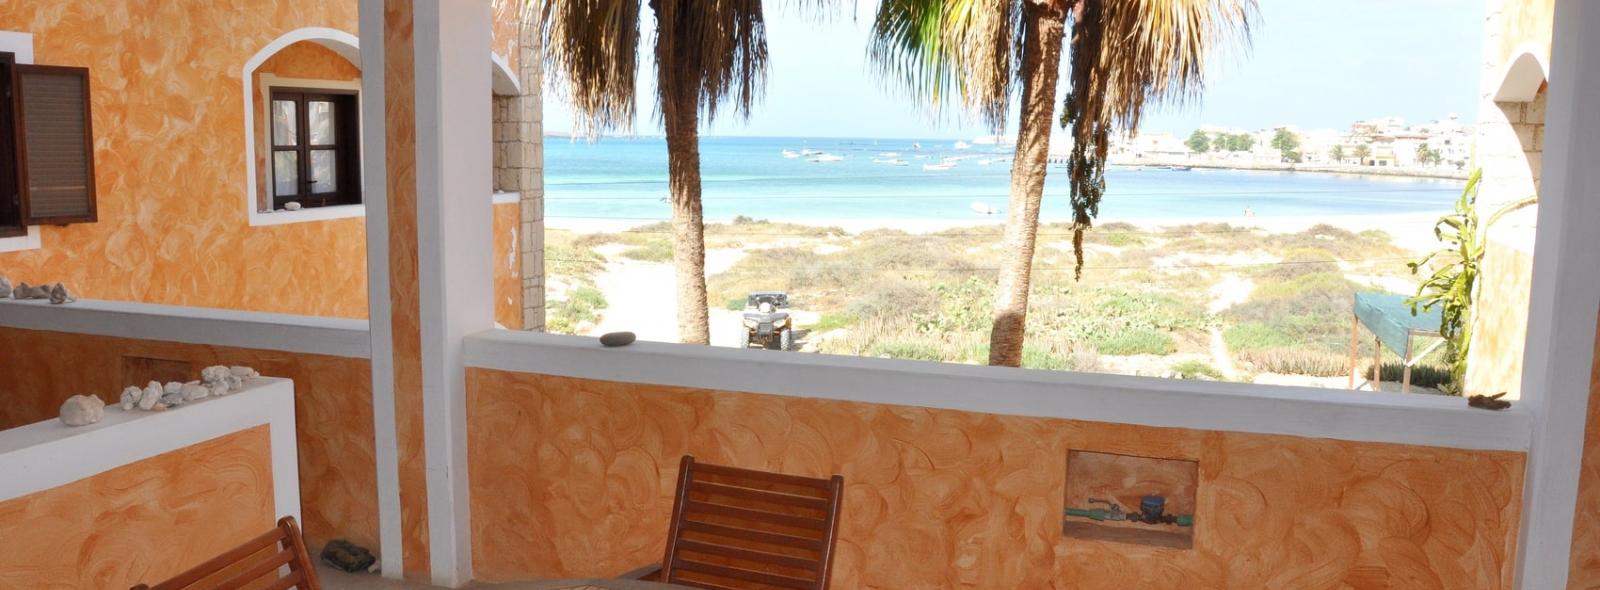 Terrasse avec vue sur la plage de l'hébergement à Ca' nicola à Boa Vista au Cap Vert